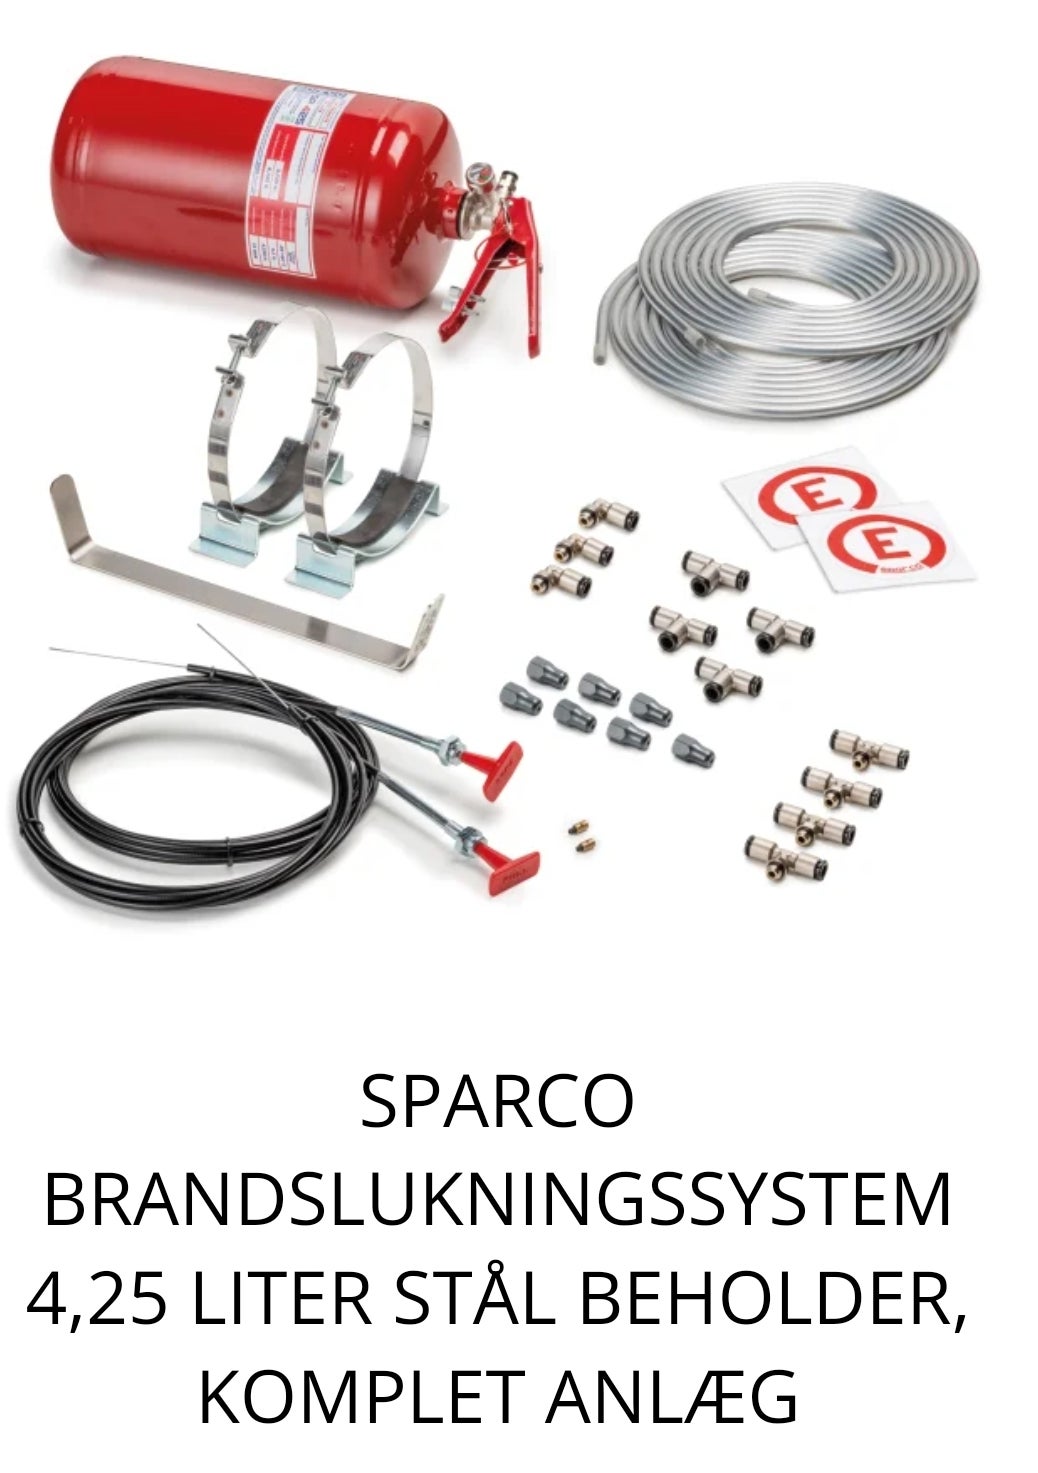 Andet, SPARCO ildslukninganlæg, modelår 2019